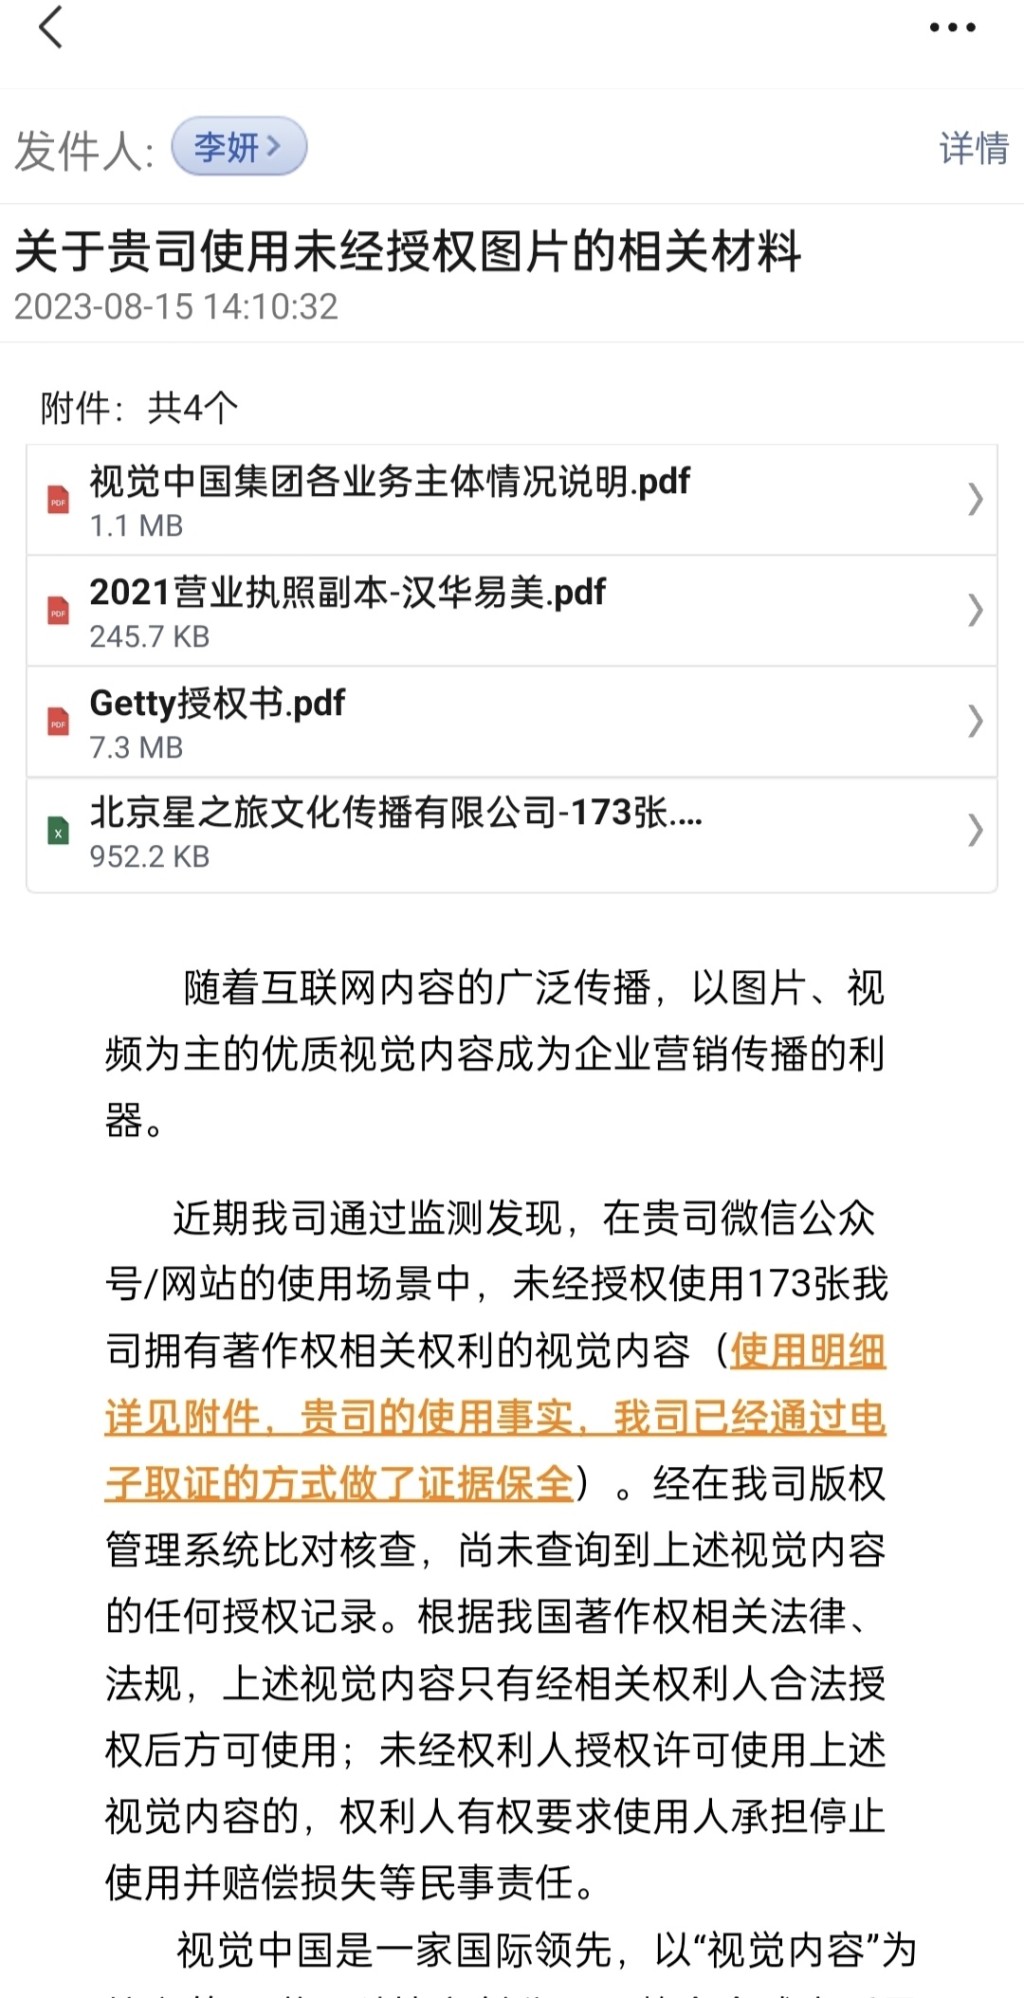 視覺中國發給戴建峰的侵權通知。 微博